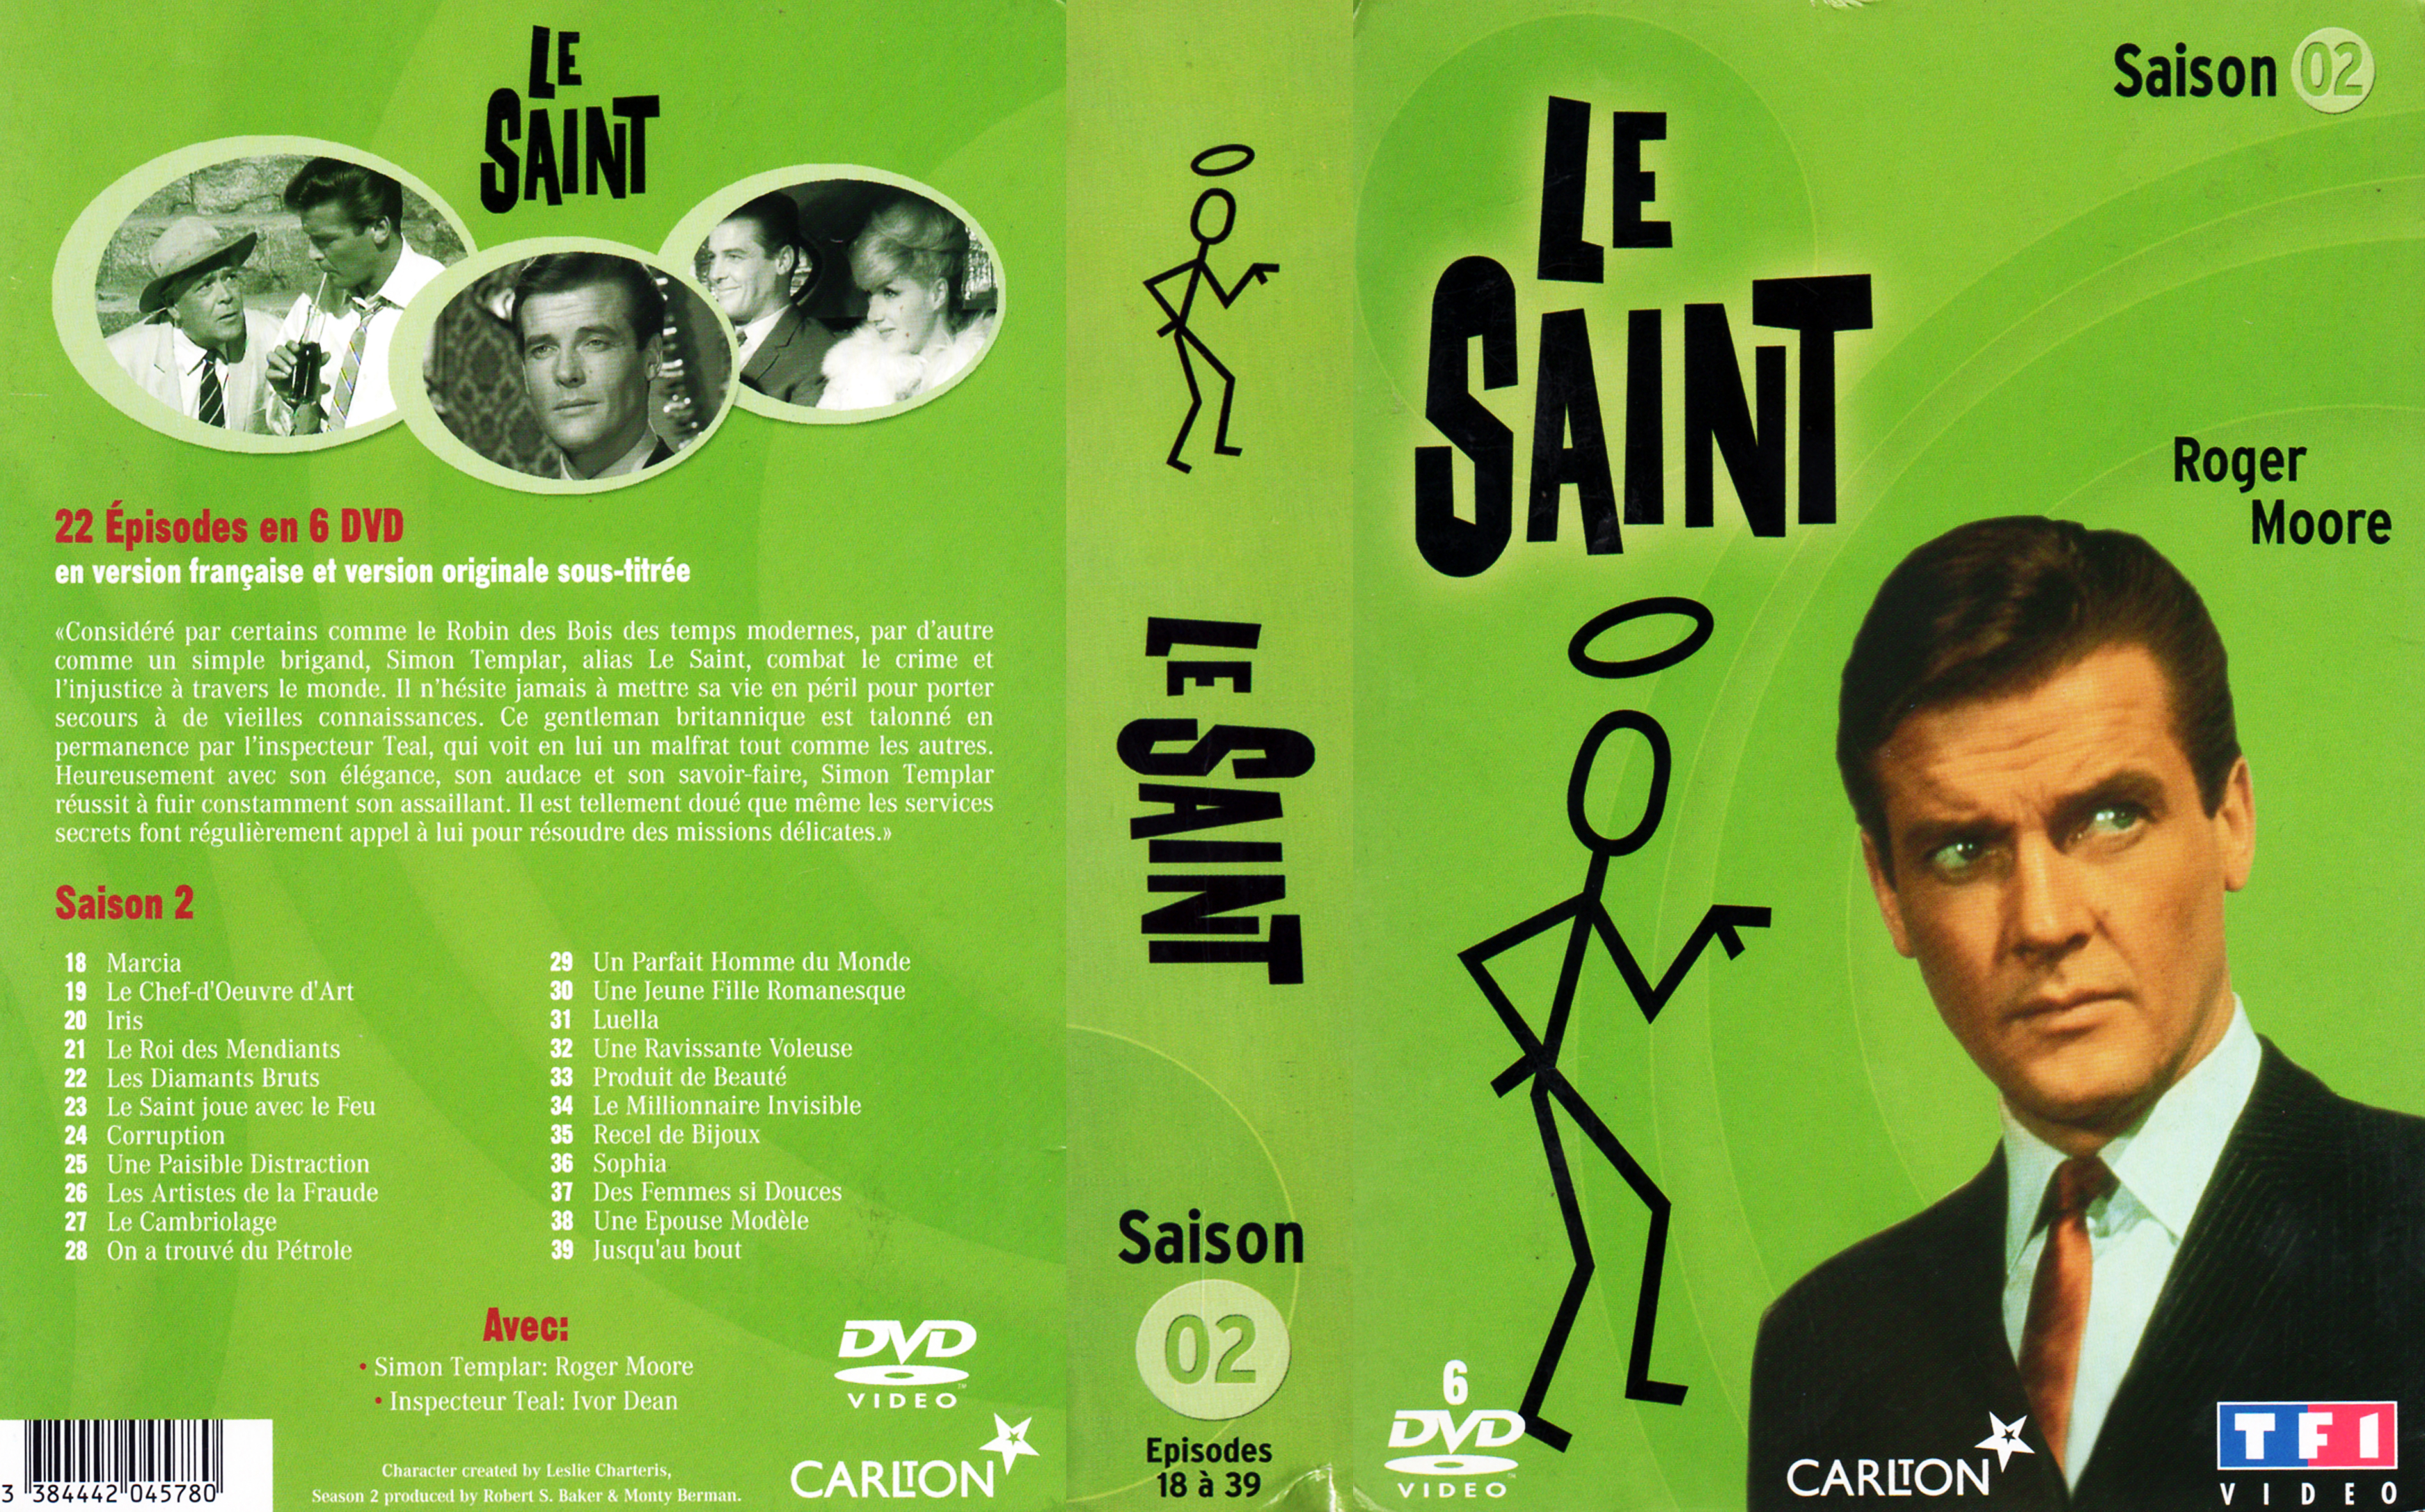 Jaquette DVD Le saint Saison 2 COFFRET